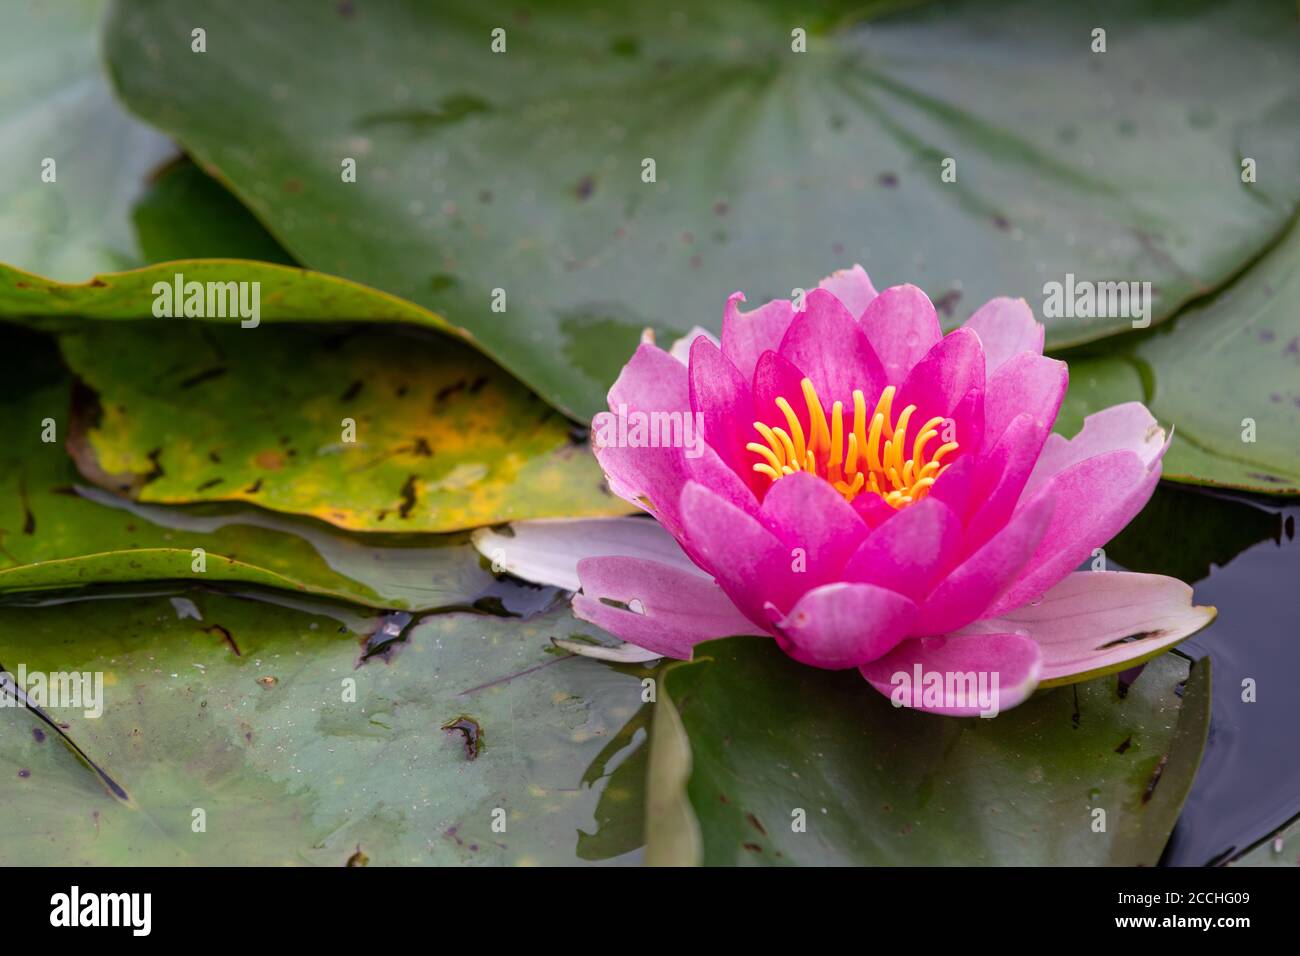 Primo piano di un fiore rosa di giglio d'acqua in fiore tra foglie verdi galleggianti in uno stagno Foto Stock